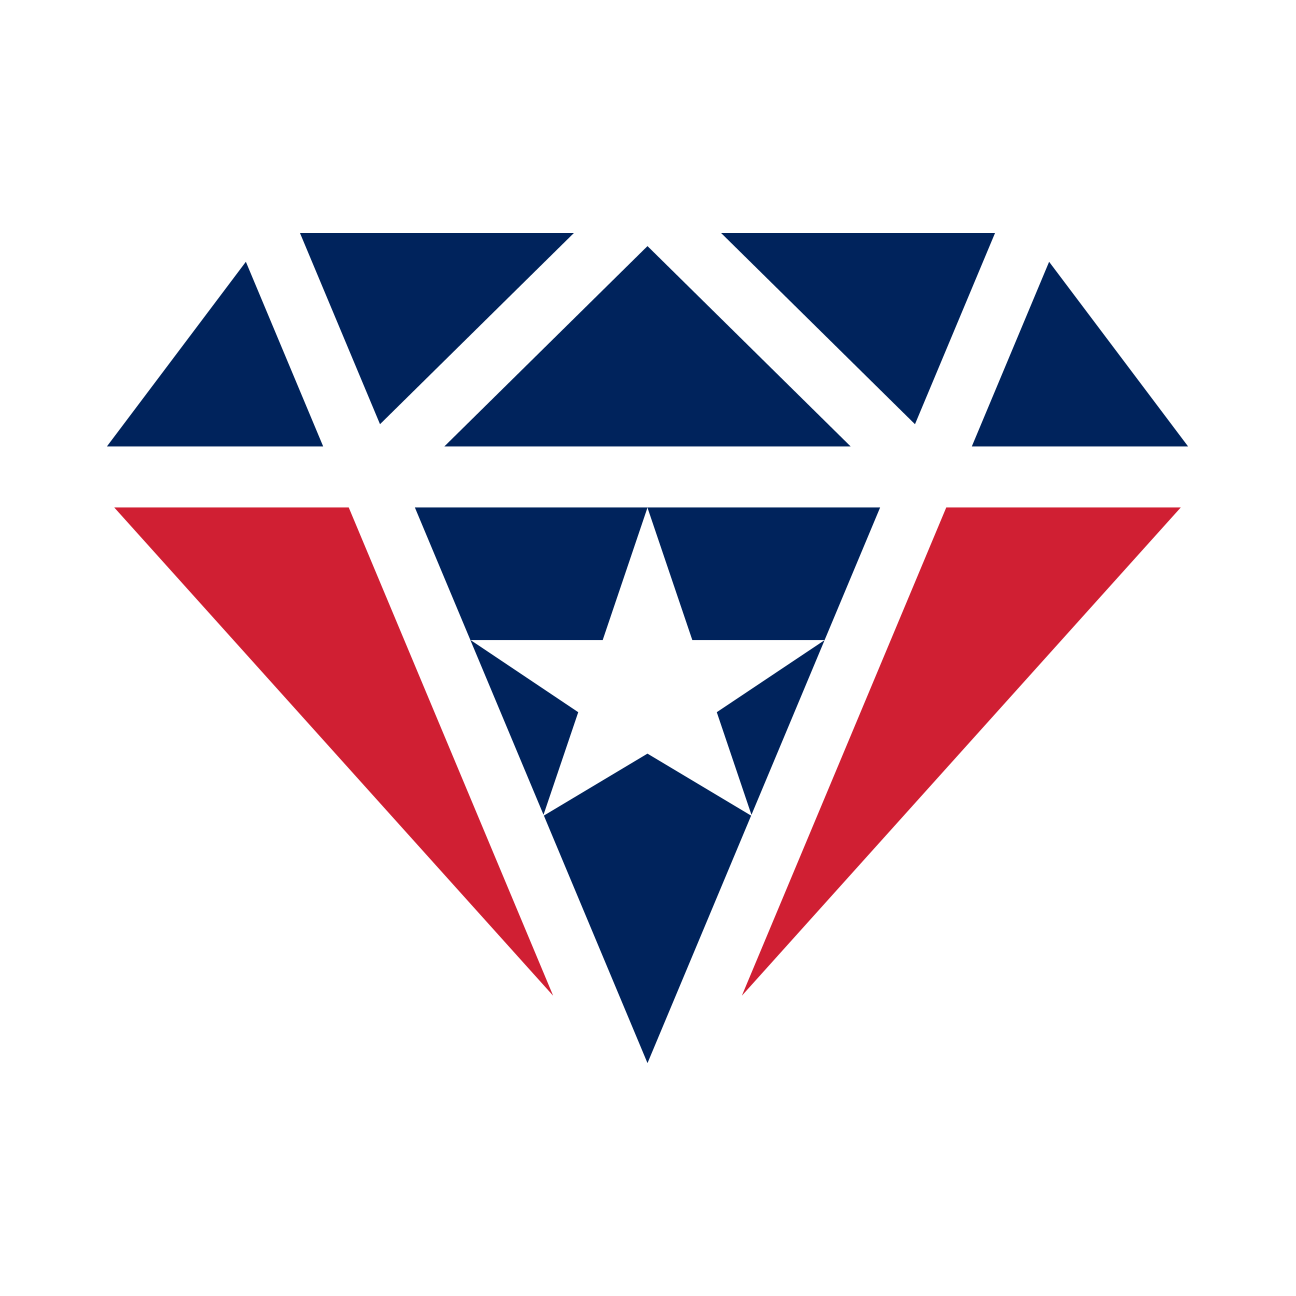 Stars Soccer Logo - New logos for 10 NFL stars - Tom Brady, Rob Gronkowski of New